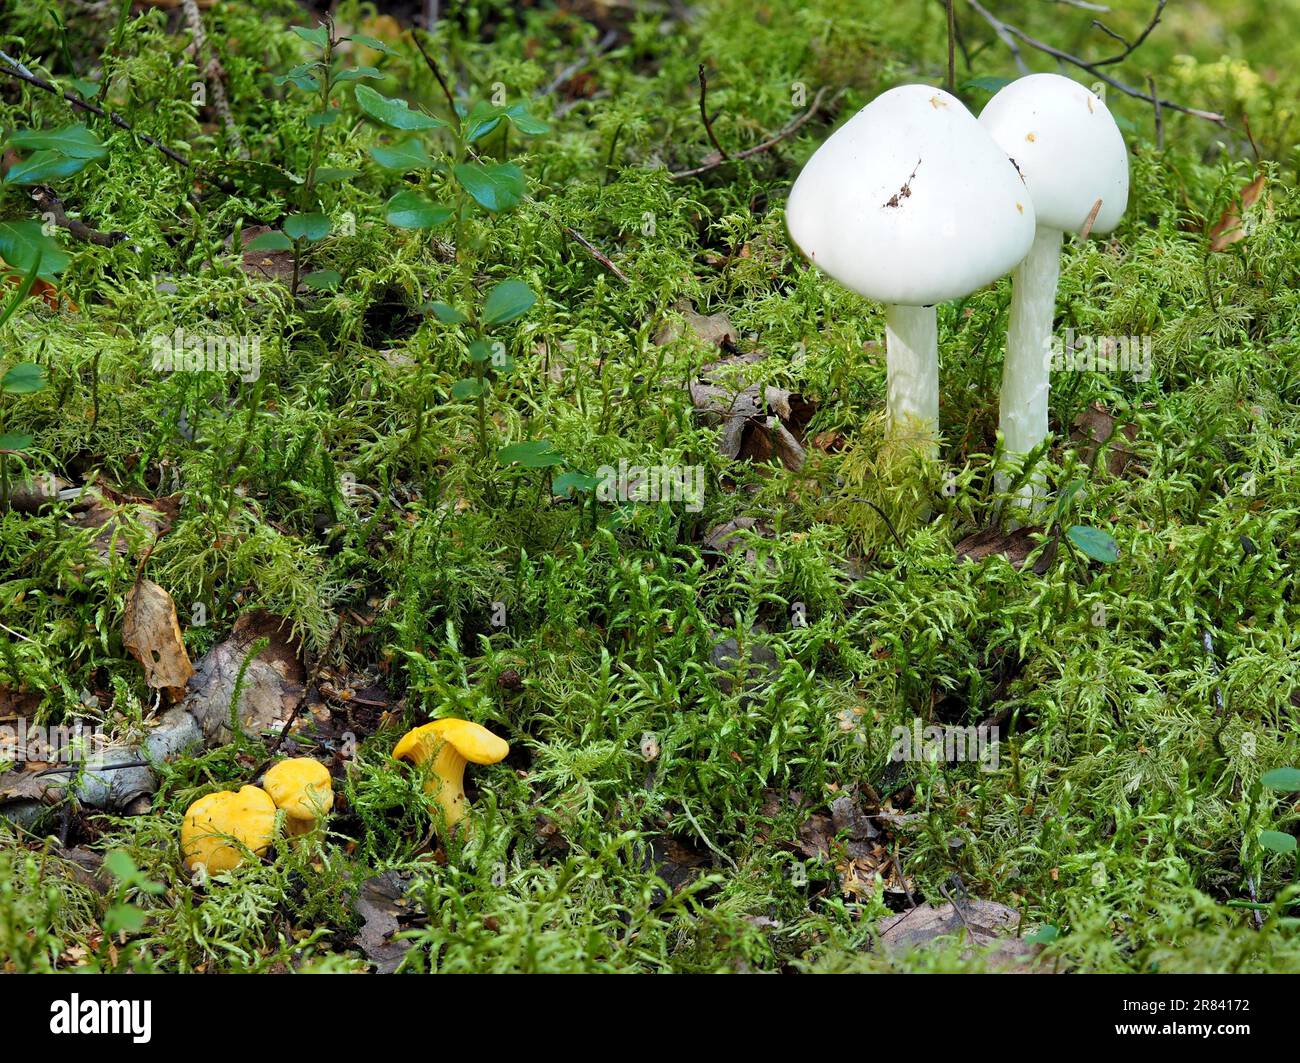 Pfifferlinge wie gute essbare Pilze direkt neben den tödlichen giftigen Tuberbelpilzen am ursprünglichen Standort in Schweden Stockfoto